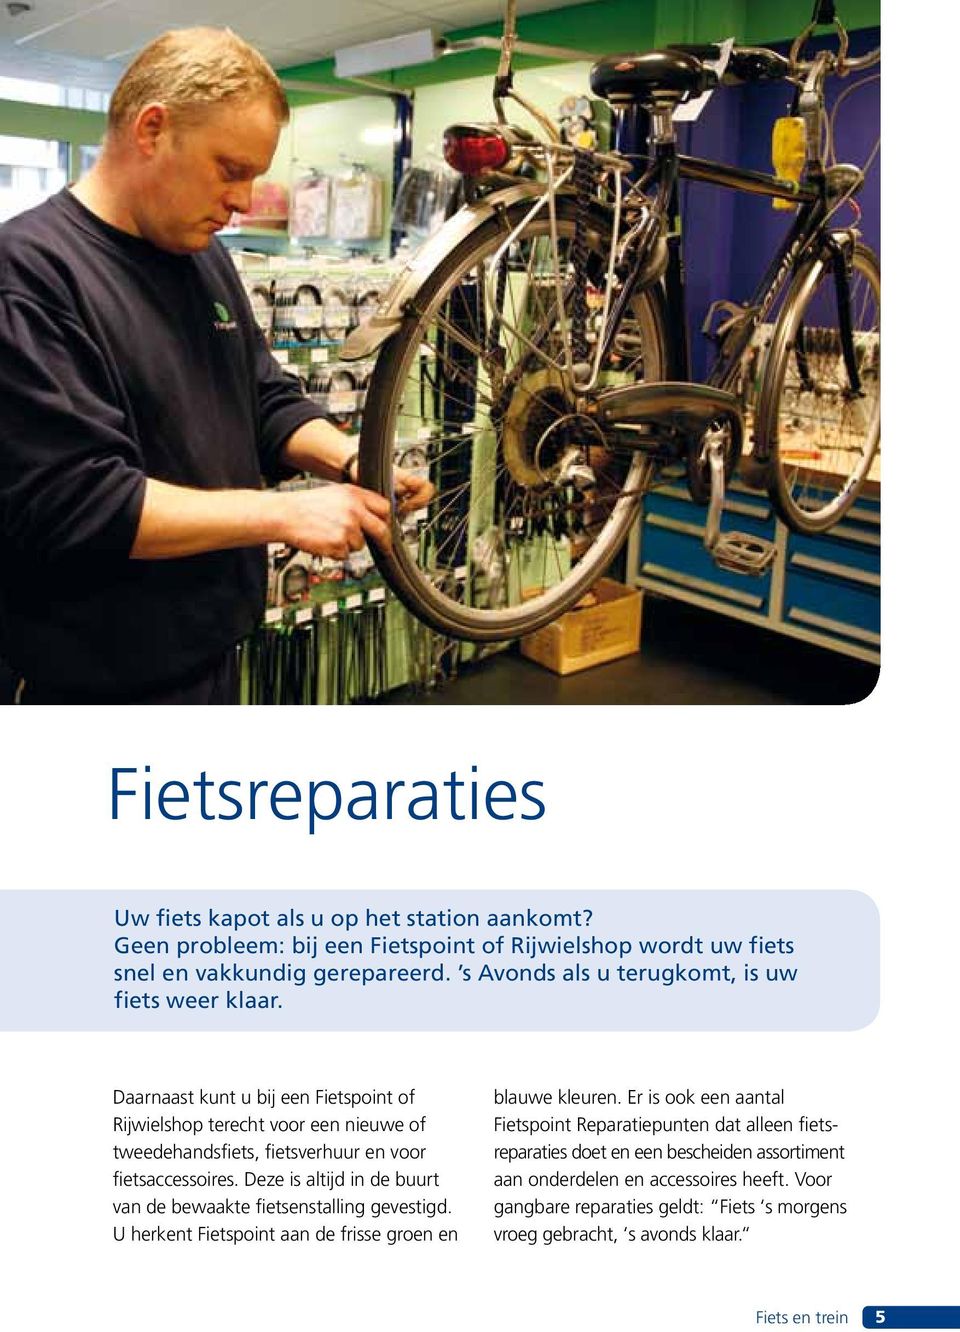 Daarnaast kunt u bij een Fietspoint of Rijwielshop terecht voor een nieuwe of tweedehandsfiets, fietsverhuur en voor fietsaccessoires.